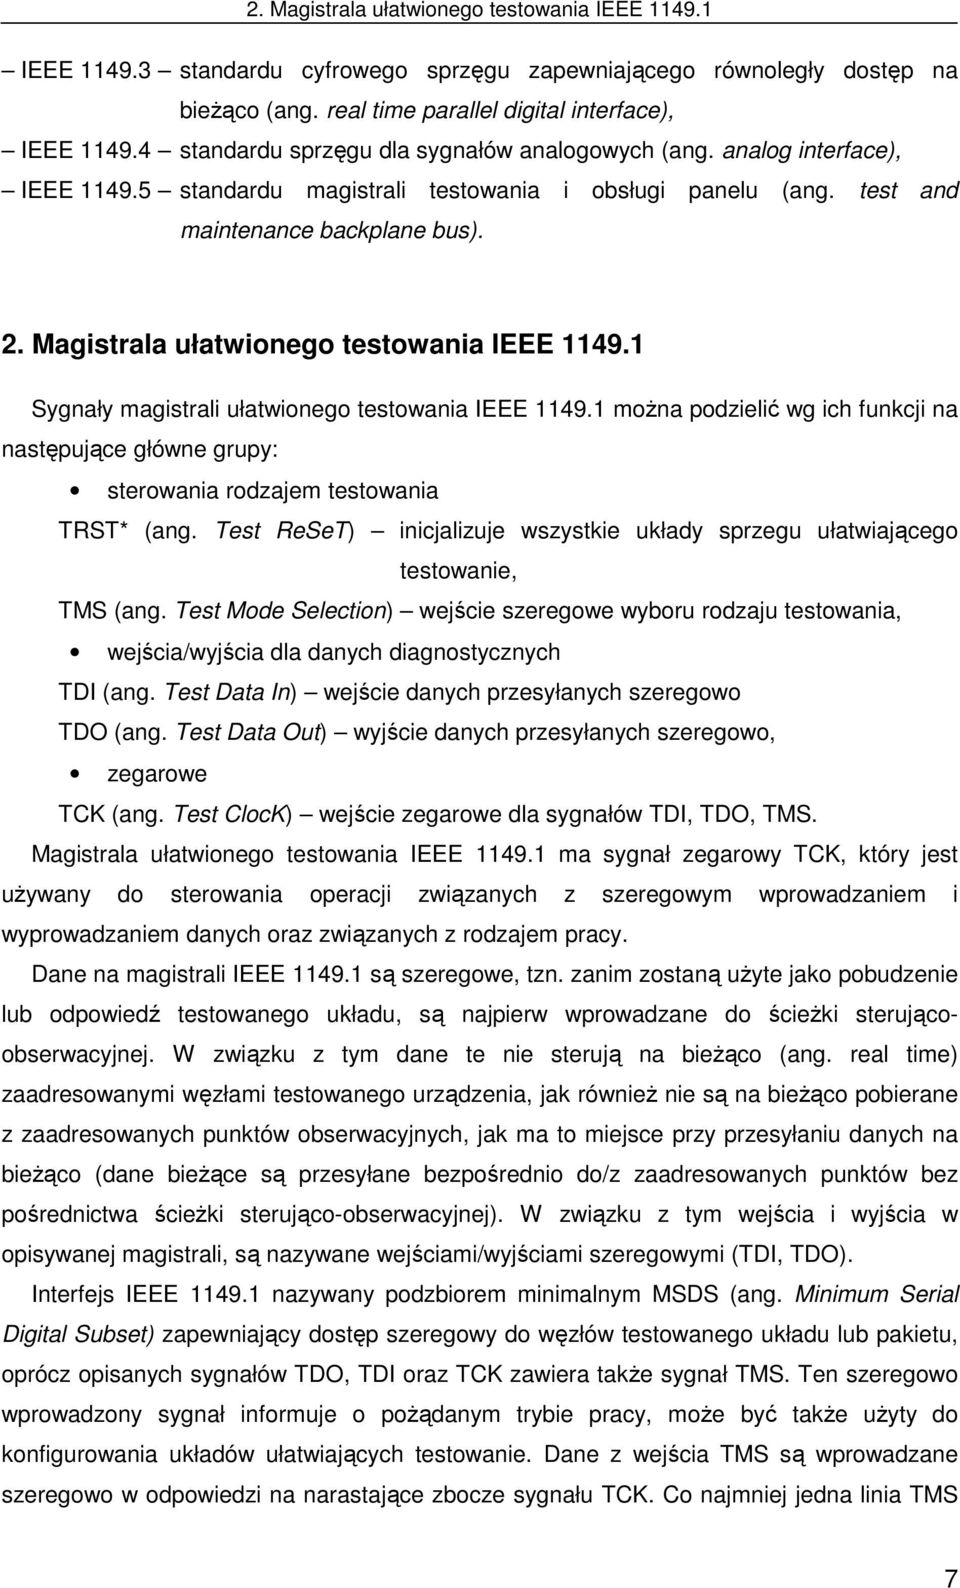 2. Magistrala ułatwionego testowania IEEE 1149.1 Sygnały magistrali ułatwionego testowania IEEE 1149.